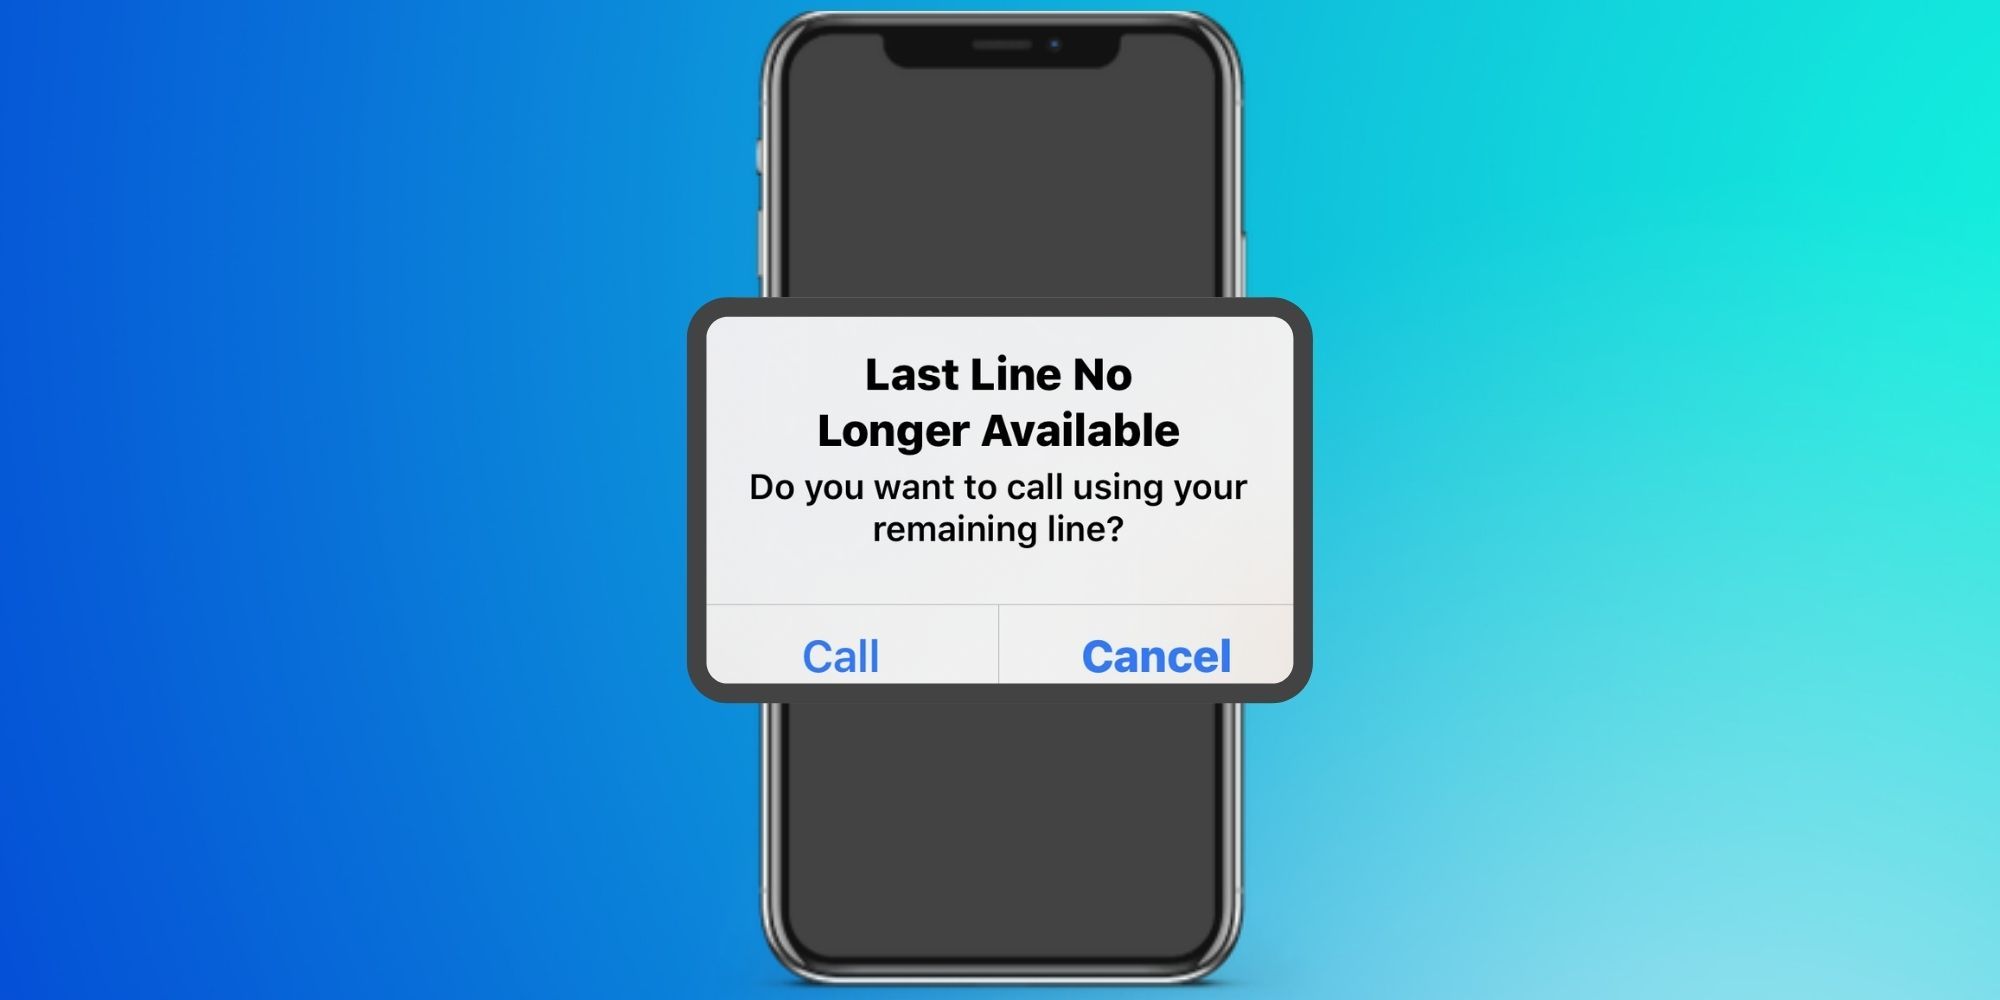 Iphone last line no longer available. No longer available. Longer available in your